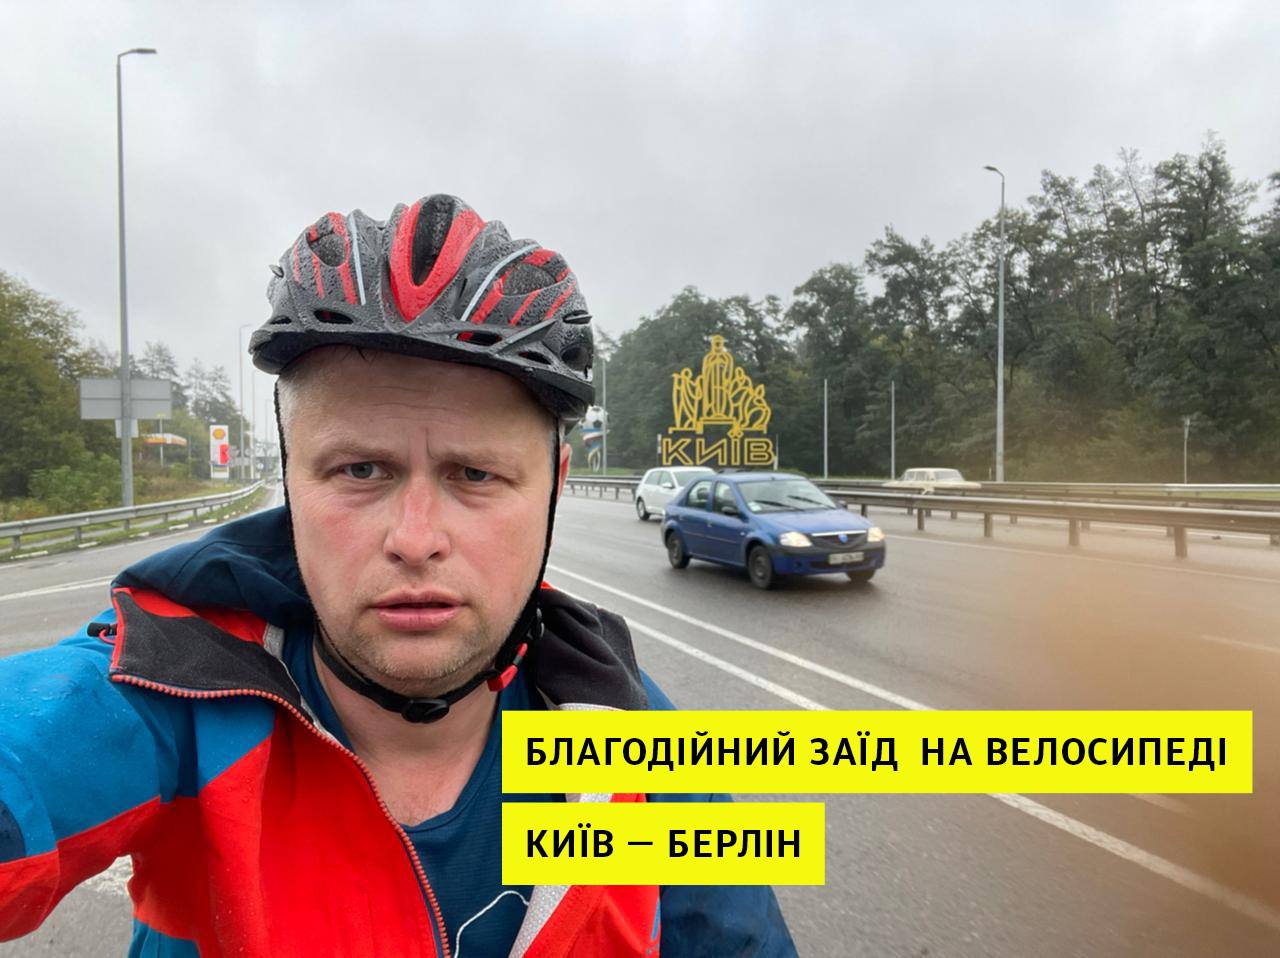 Український залізничник вирушив з Києва до Берлина на велосипеді